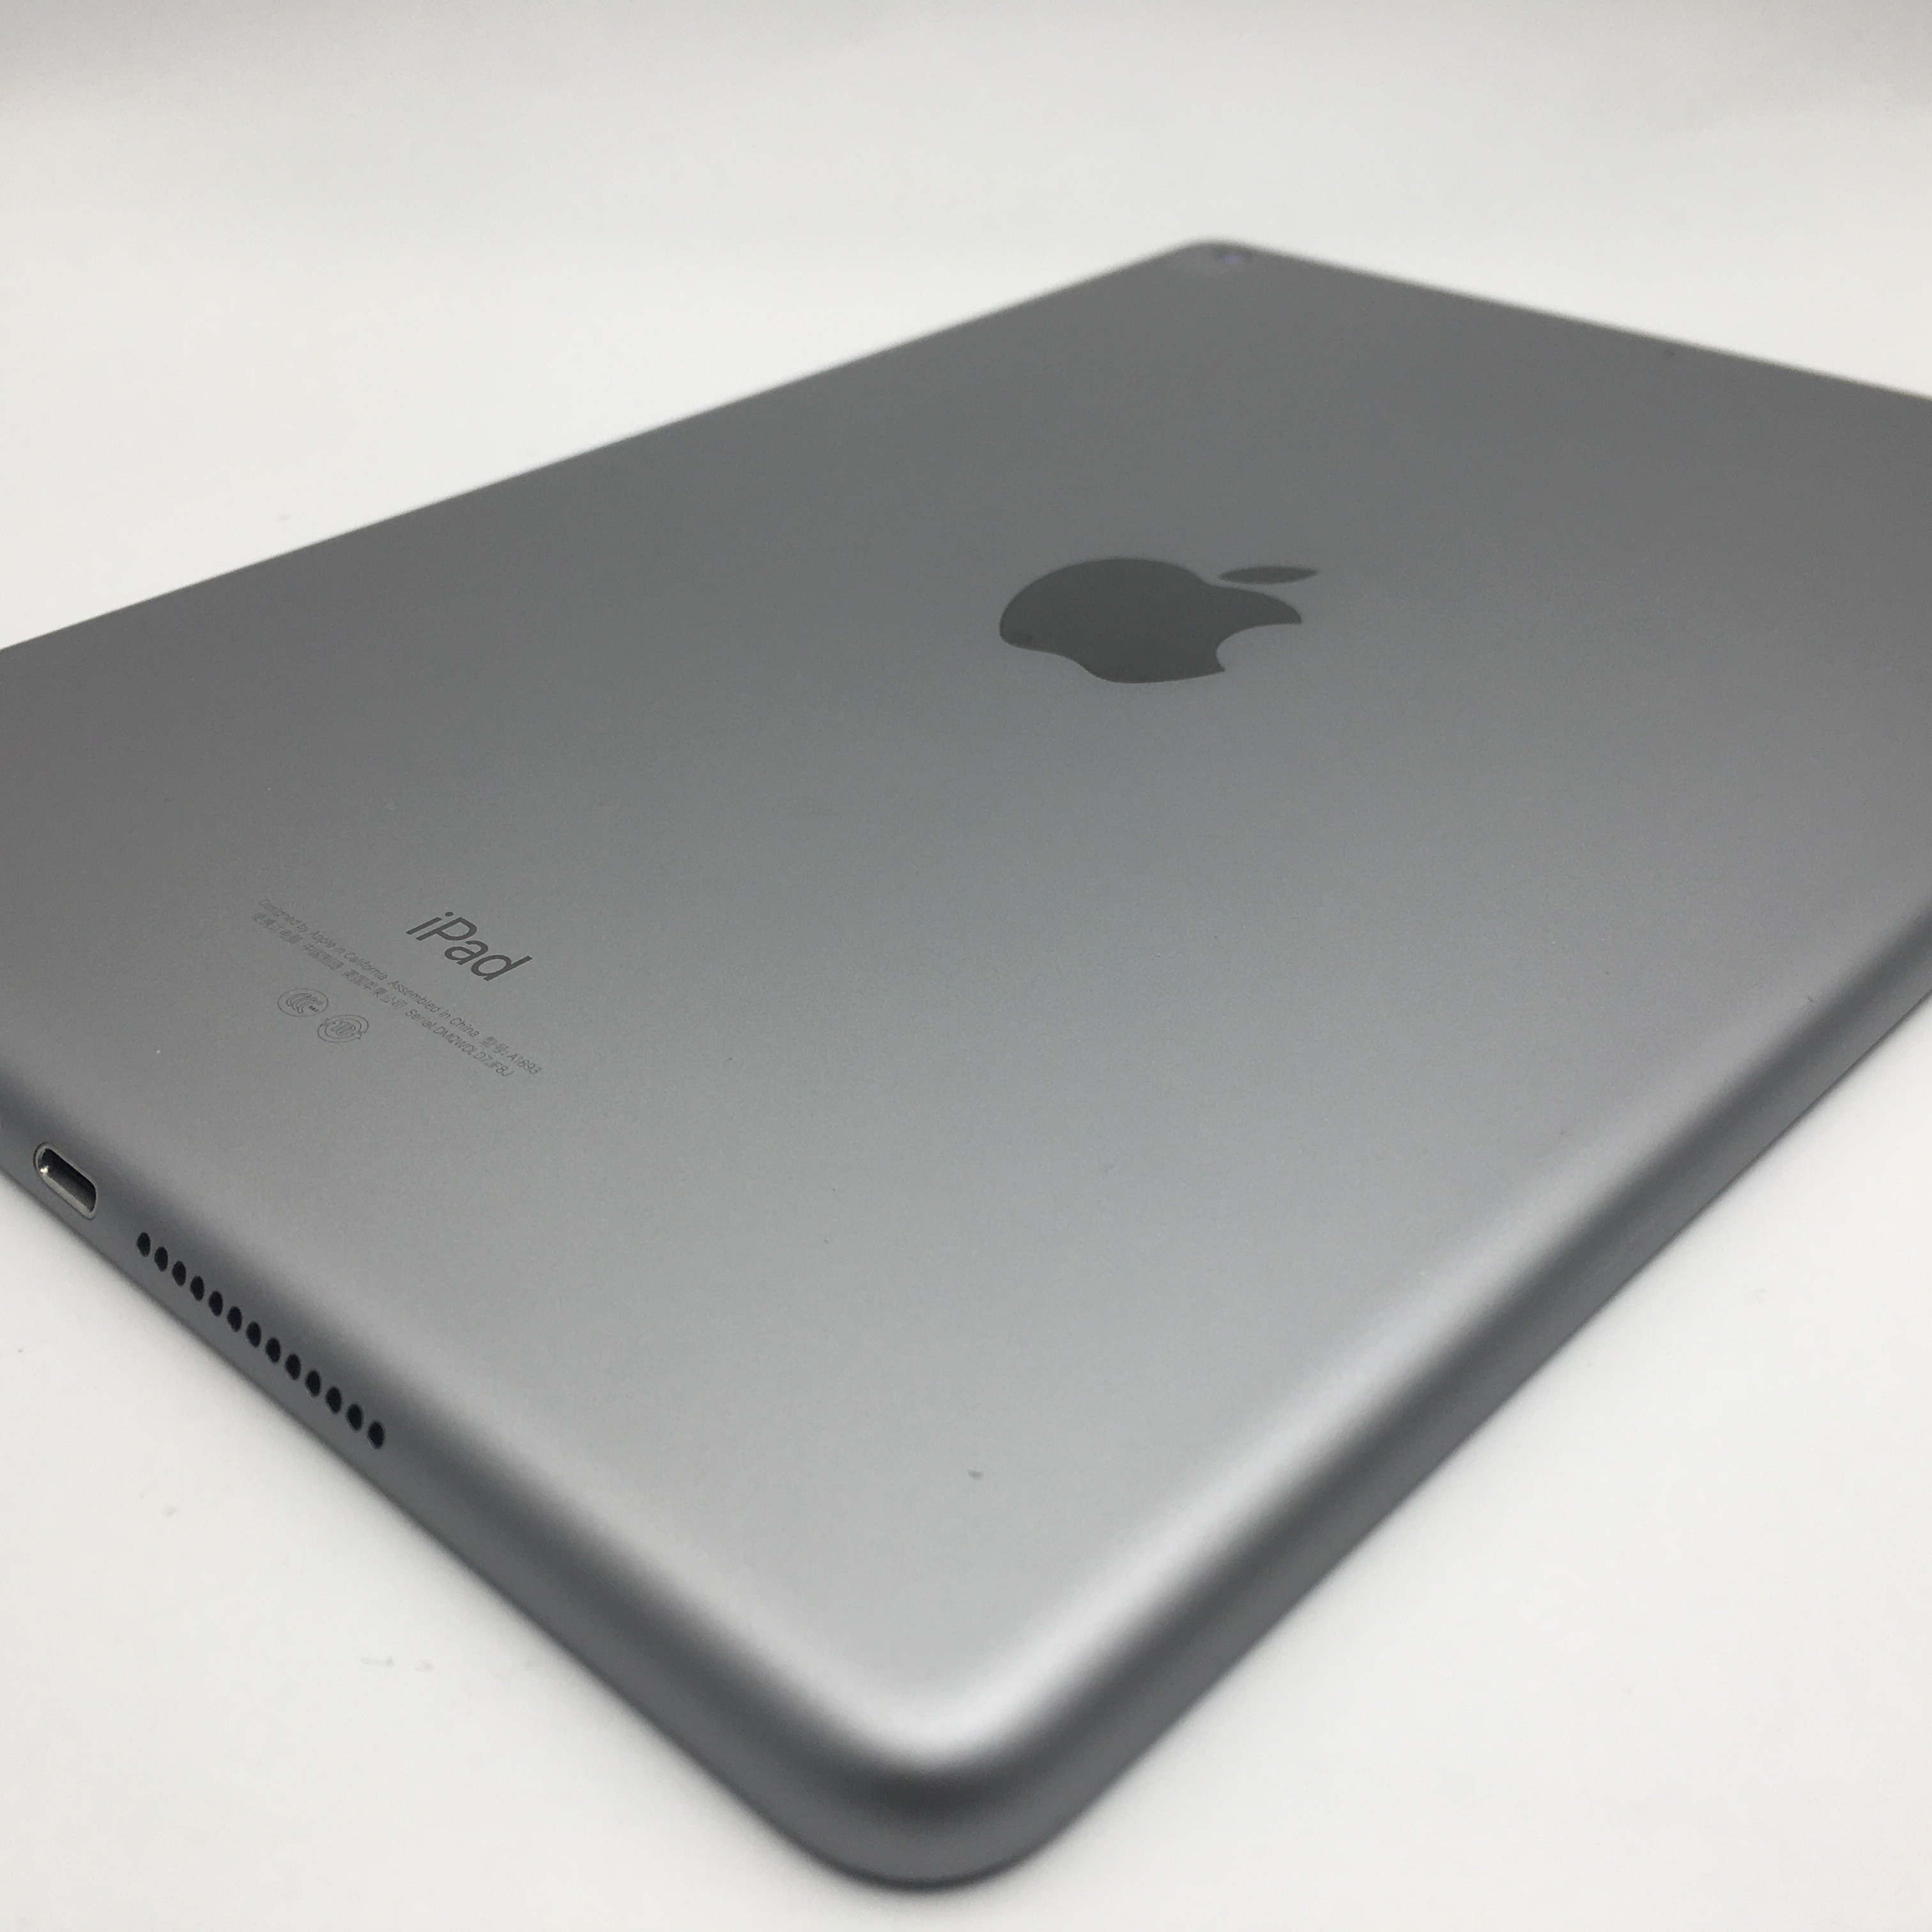 Customer Reviews: Apple iPad mini 4 Wi-Fi 32GB Space Gray 3C528LL/A ...